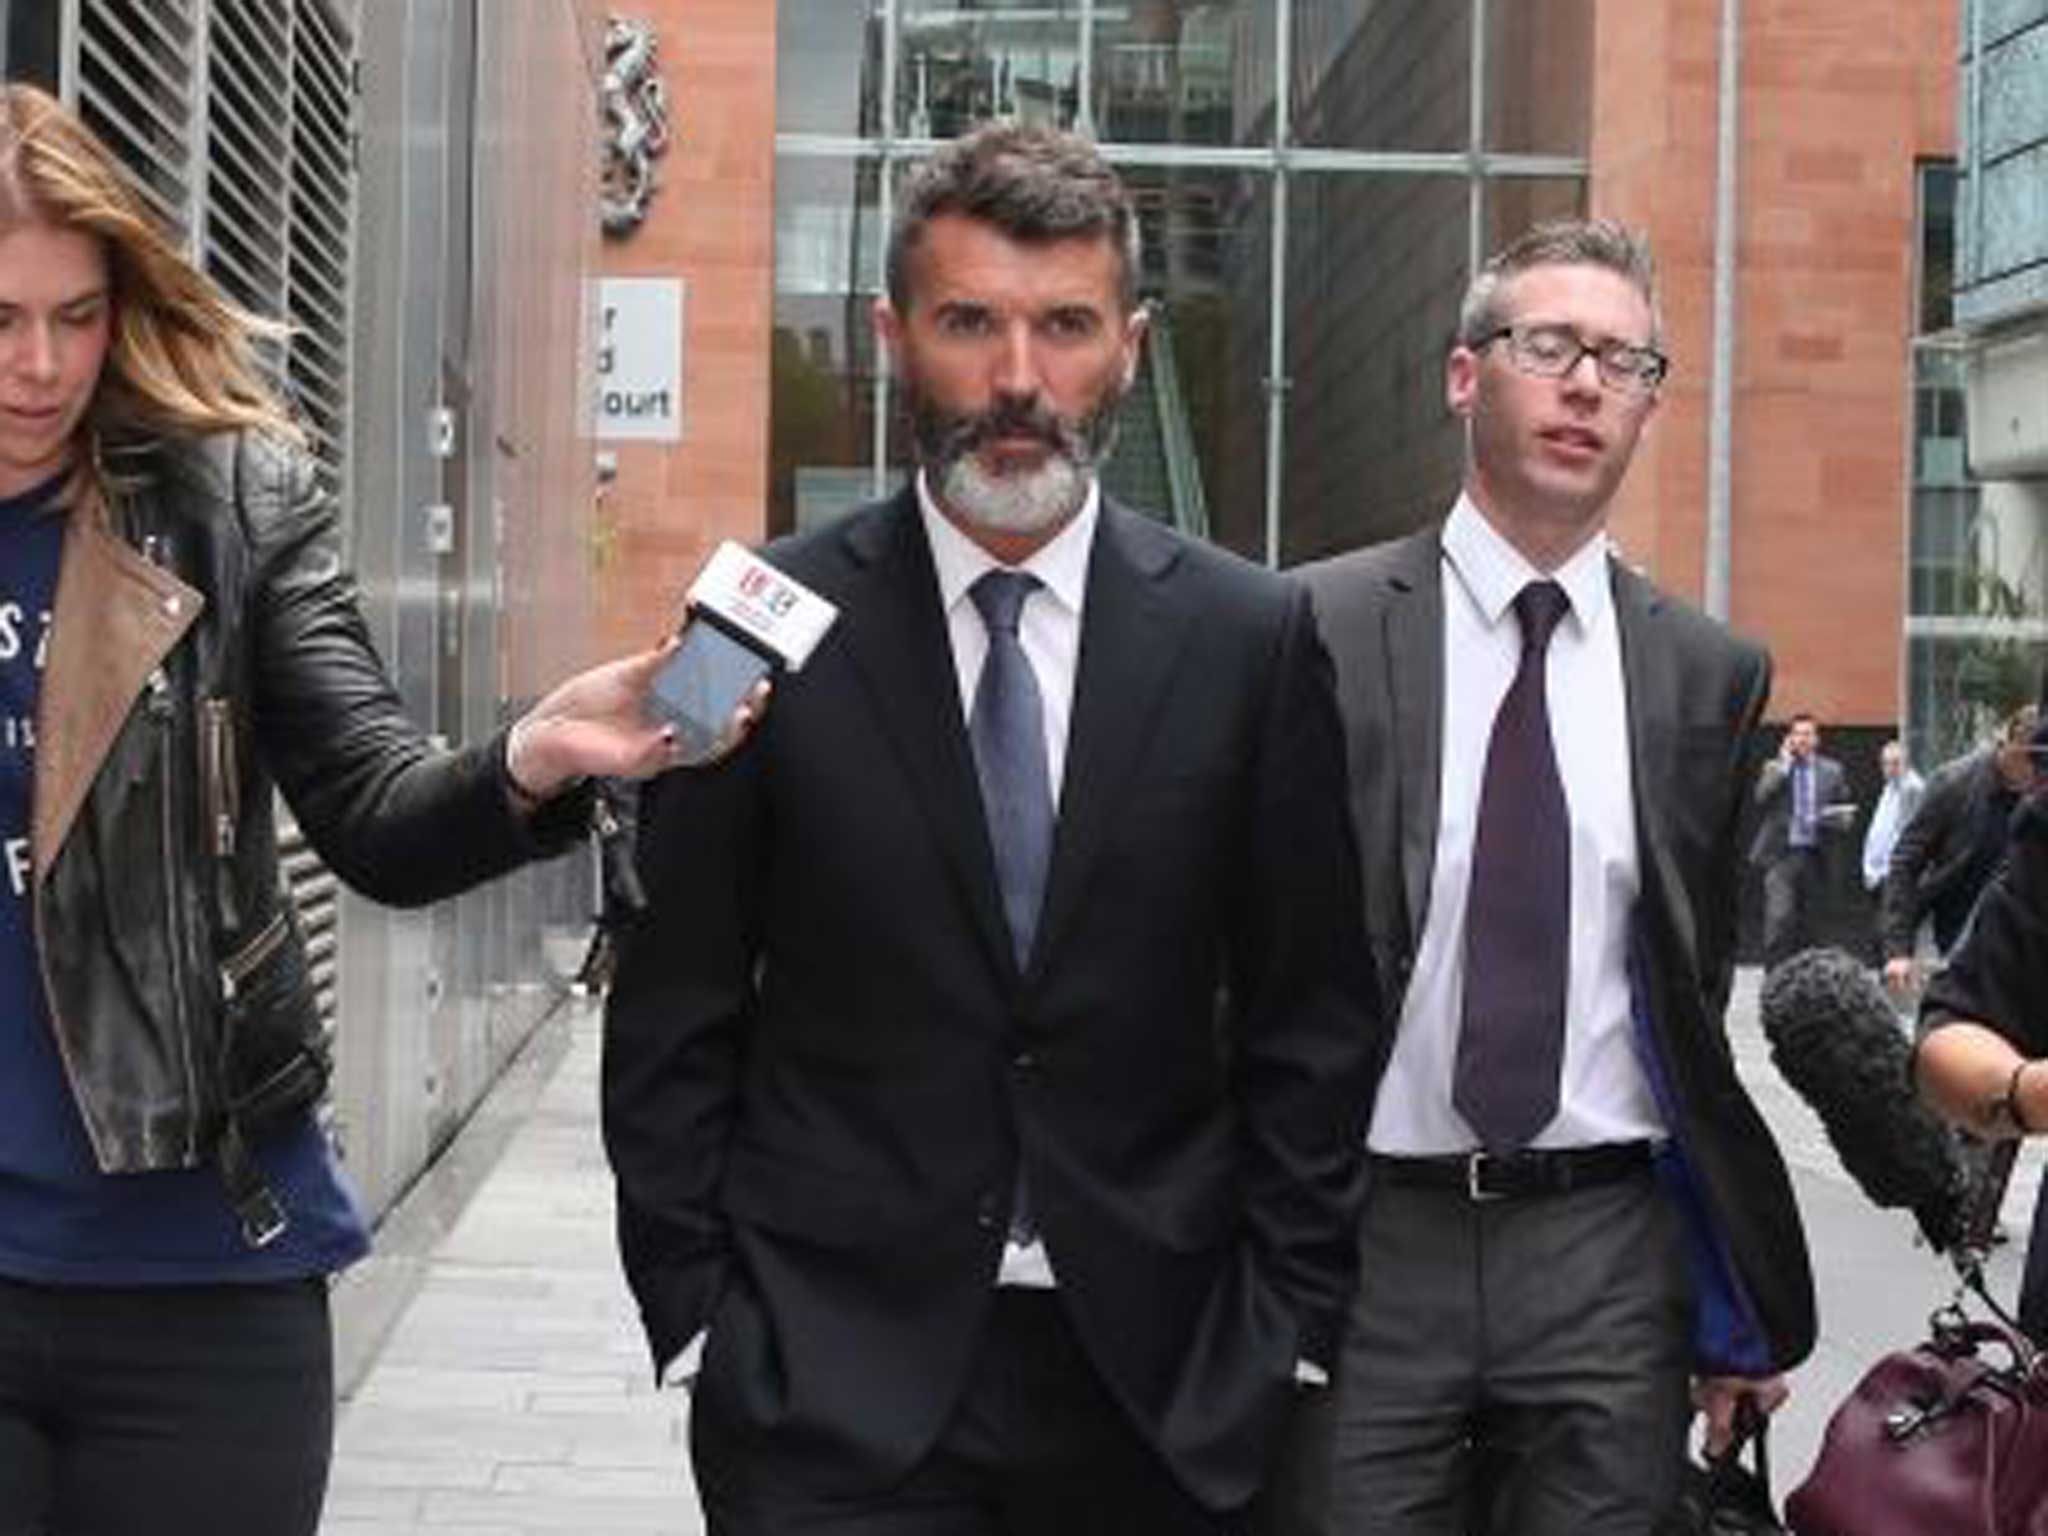 Keane leaves court